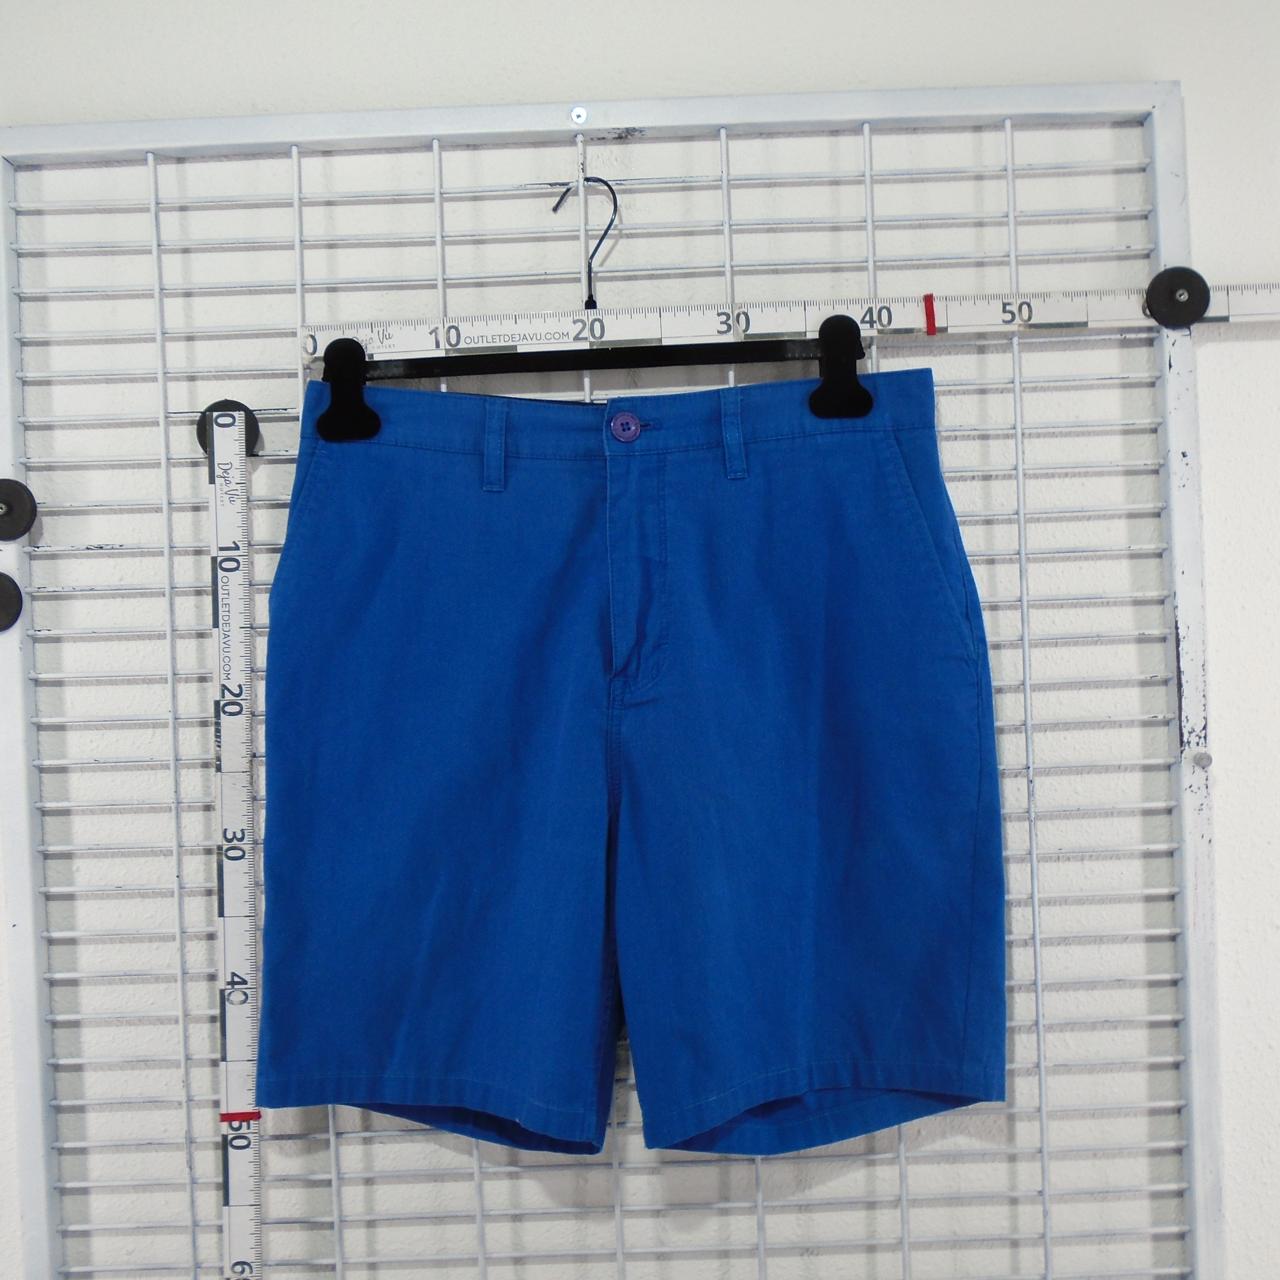 Pantalones cortos de hombre Quiksilver.  Azul.  S. Usado.  Bien